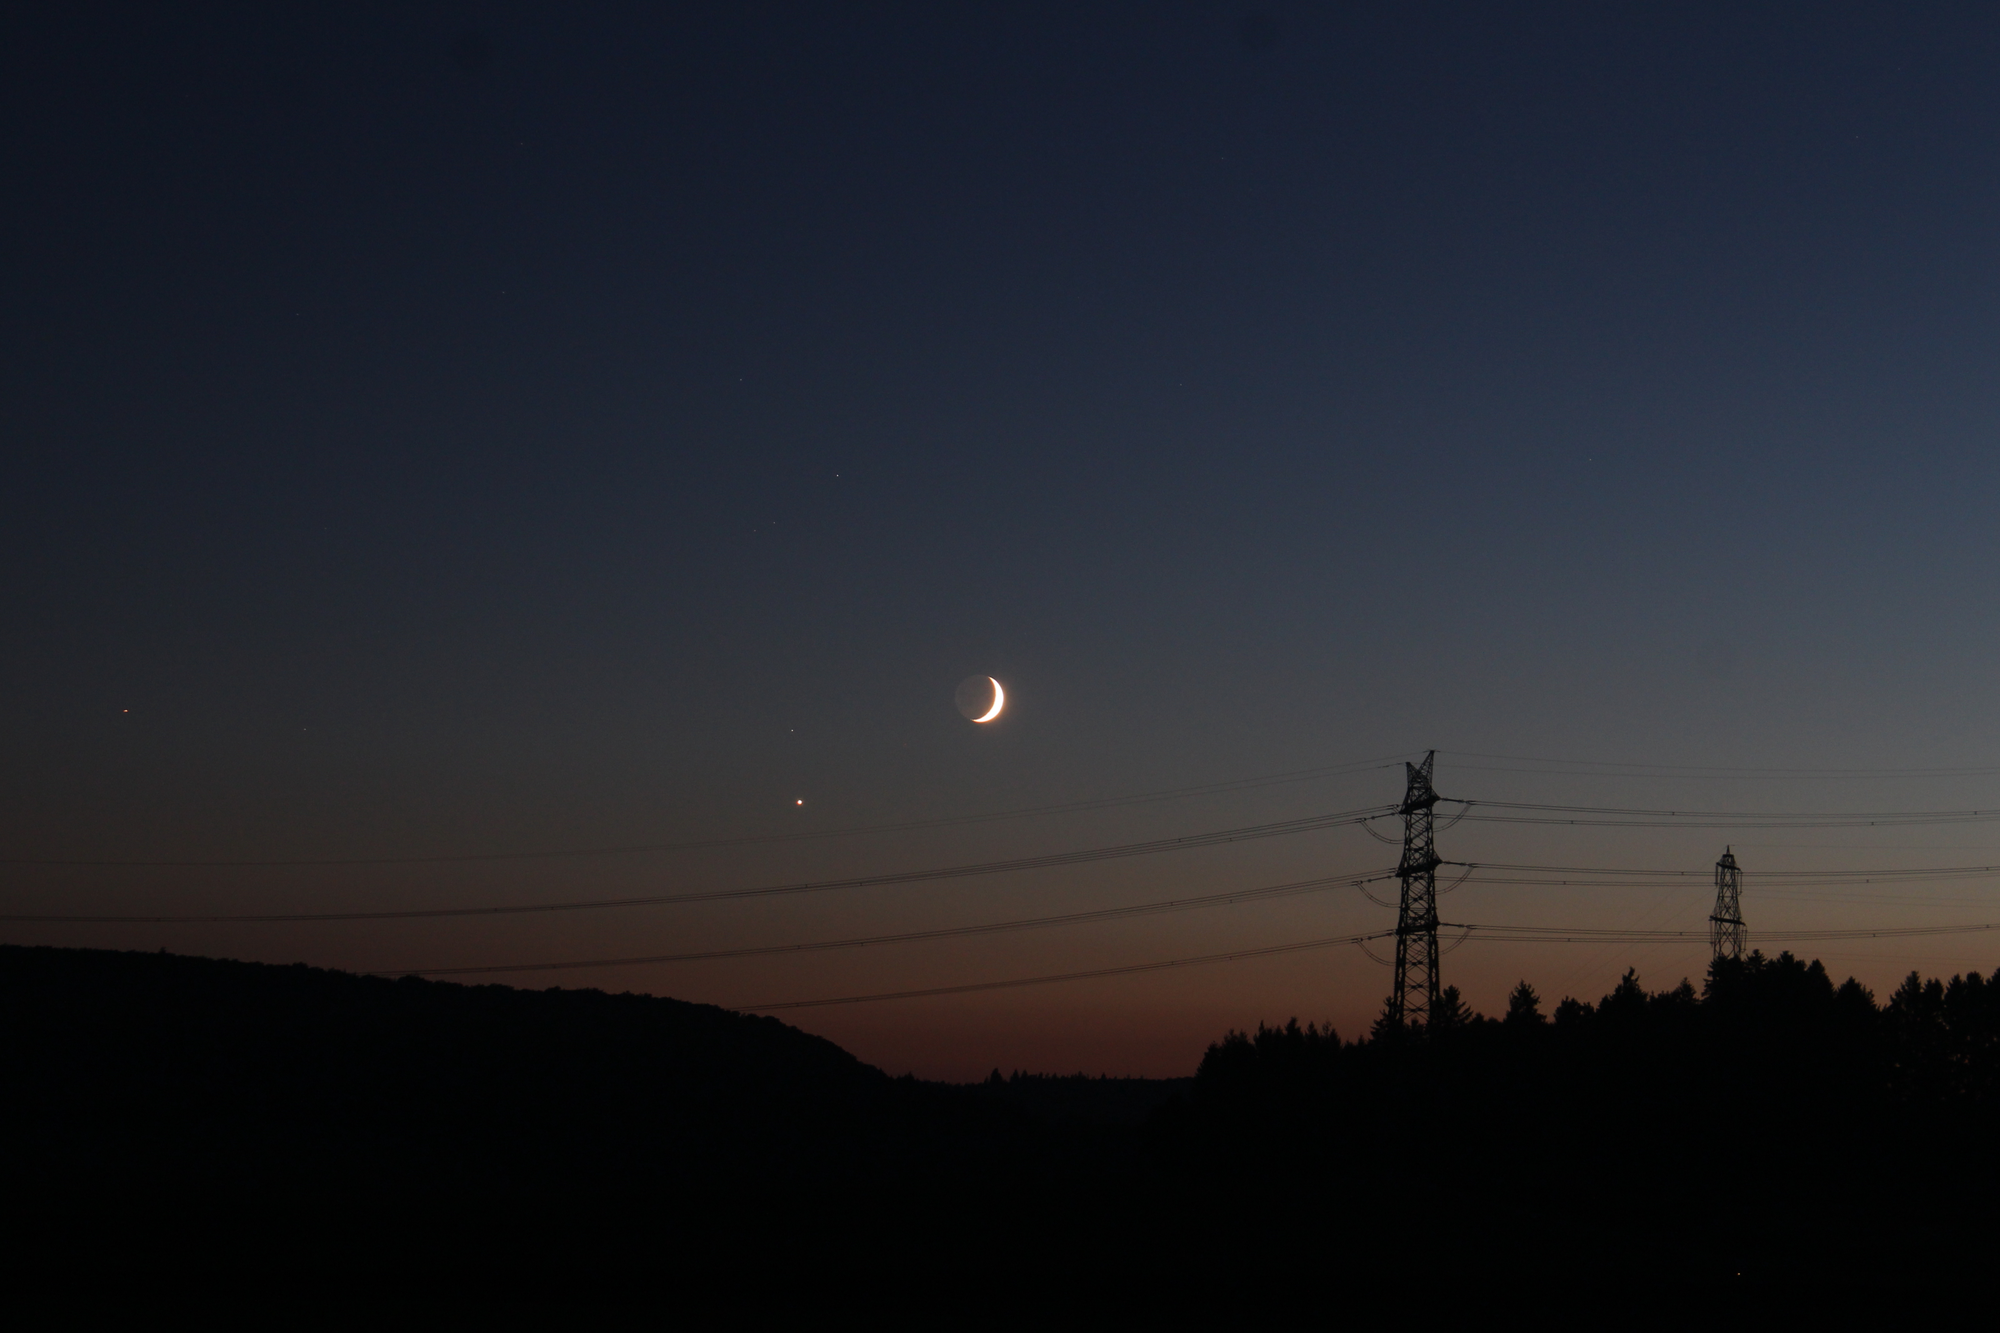 Mond und Venus in der Abenddämmerung - fotografiert mit mittlerer Brennweite